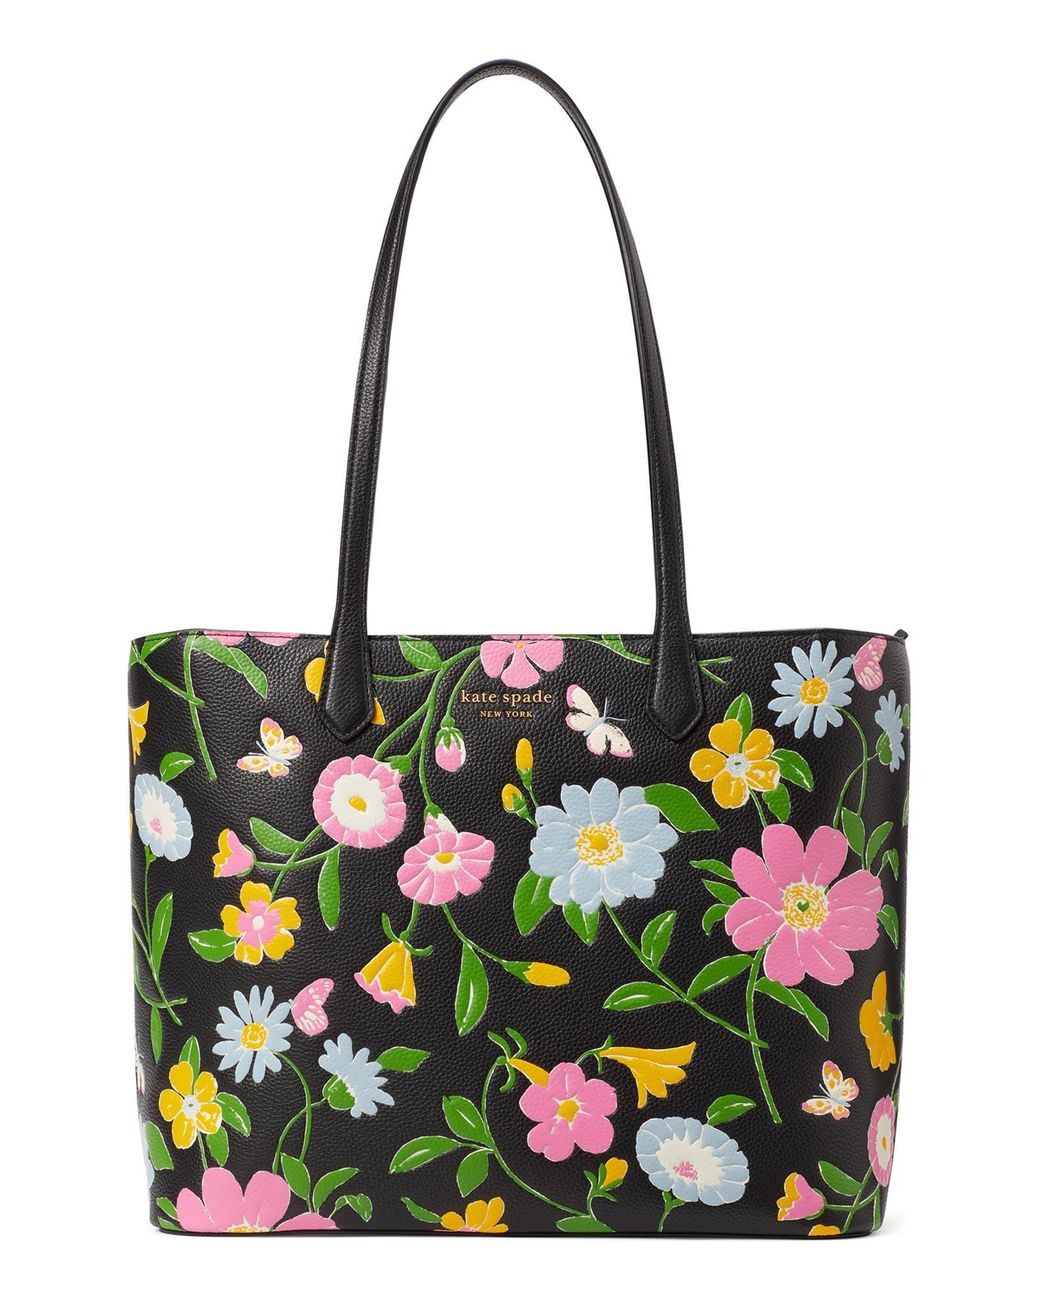 Women Genuine Leather Shoulder Bag Floral-Embossed Crossbody Bag Handbag  for Women (Floral-Embossed Black): Handbags